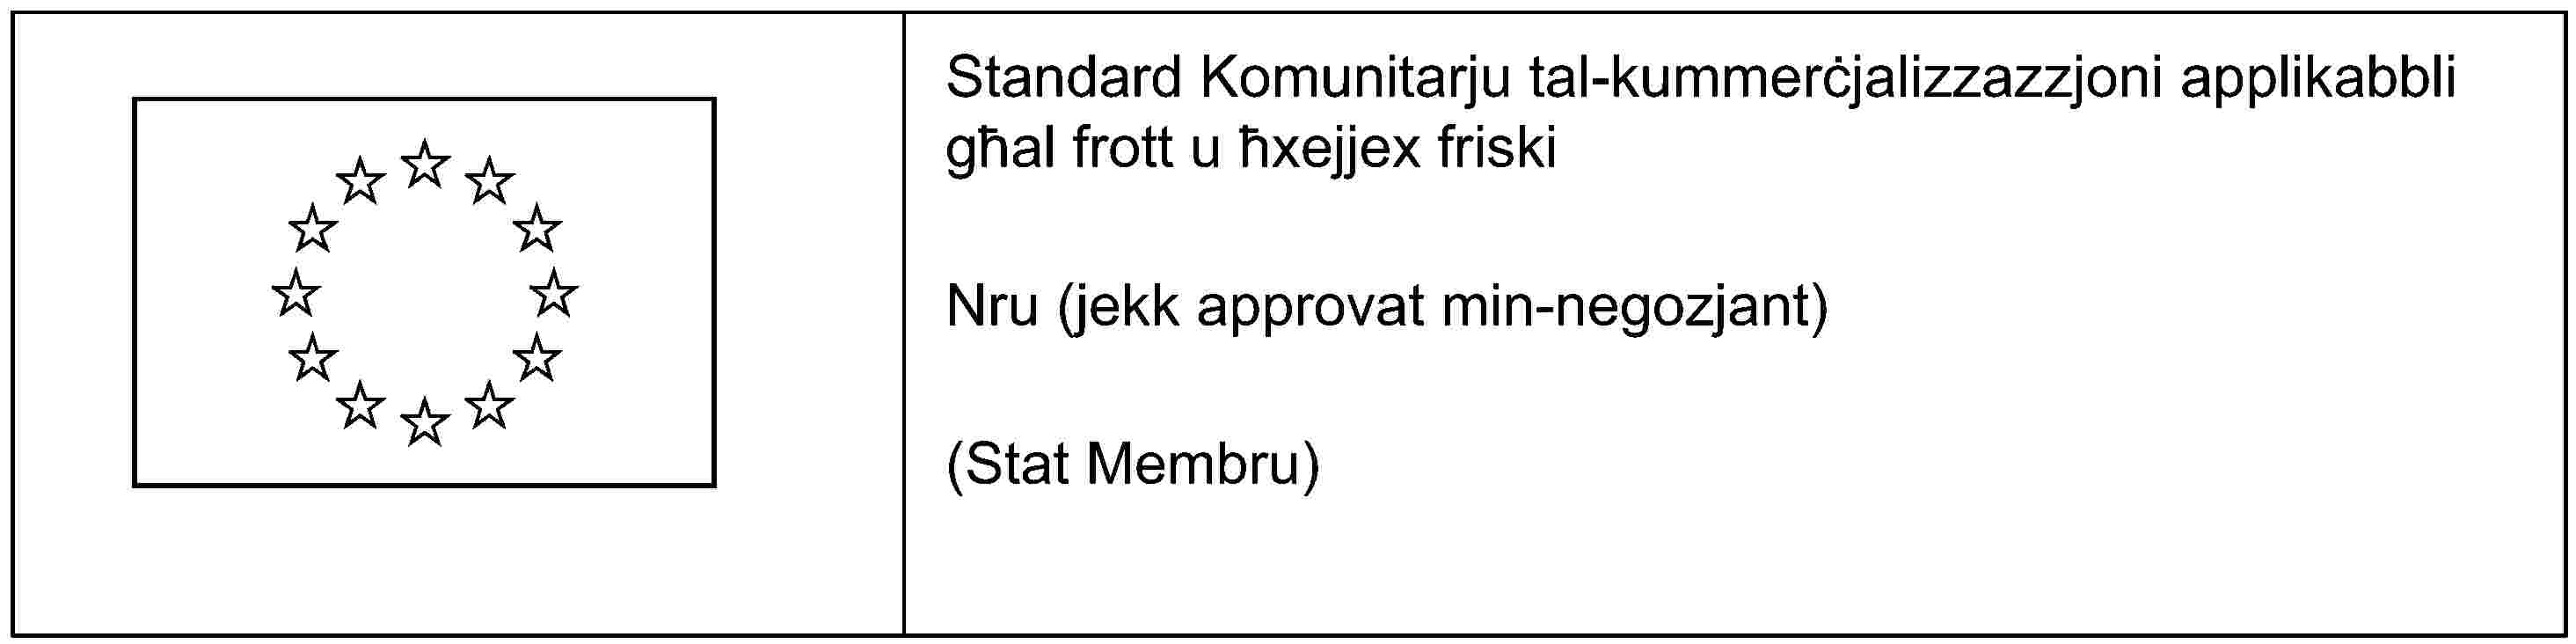 Standard Komunitarju tal-kummerċjalizzazzjoni applikabbli għal frott u ħxejjex friskiNru (jekk approvat min-negozjant)(Stat Membru)